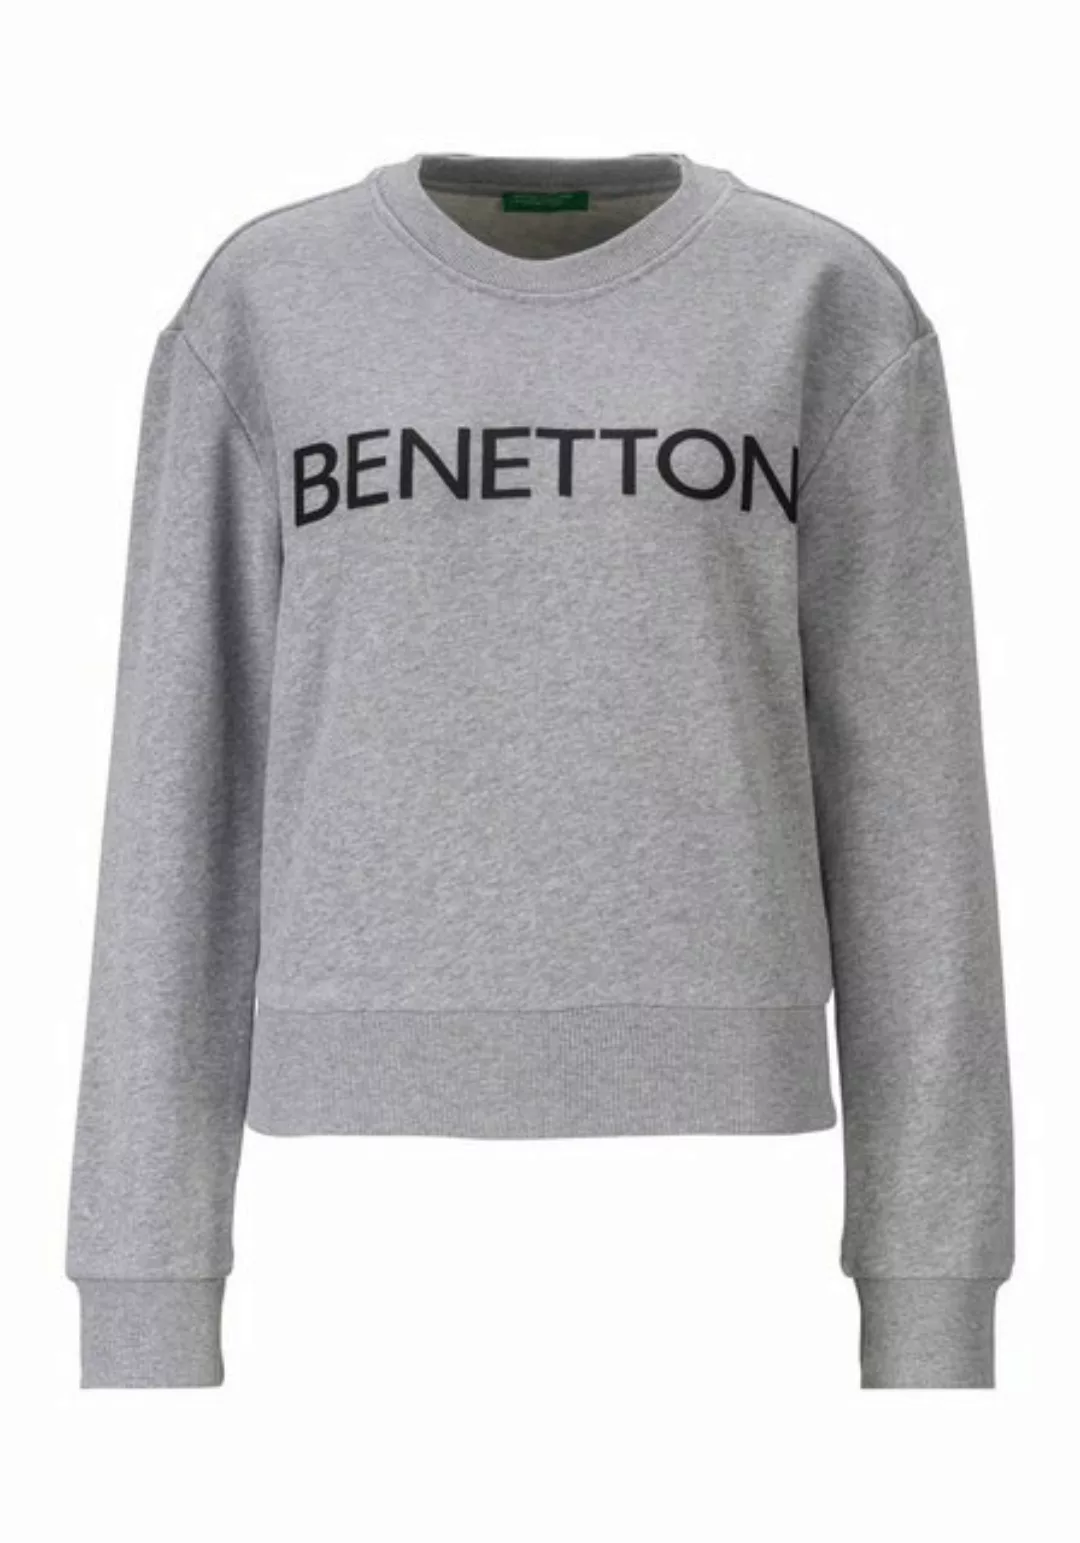 United Colors of Benetton Sweatshirt mit Benetton Aufdruck günstig online kaufen